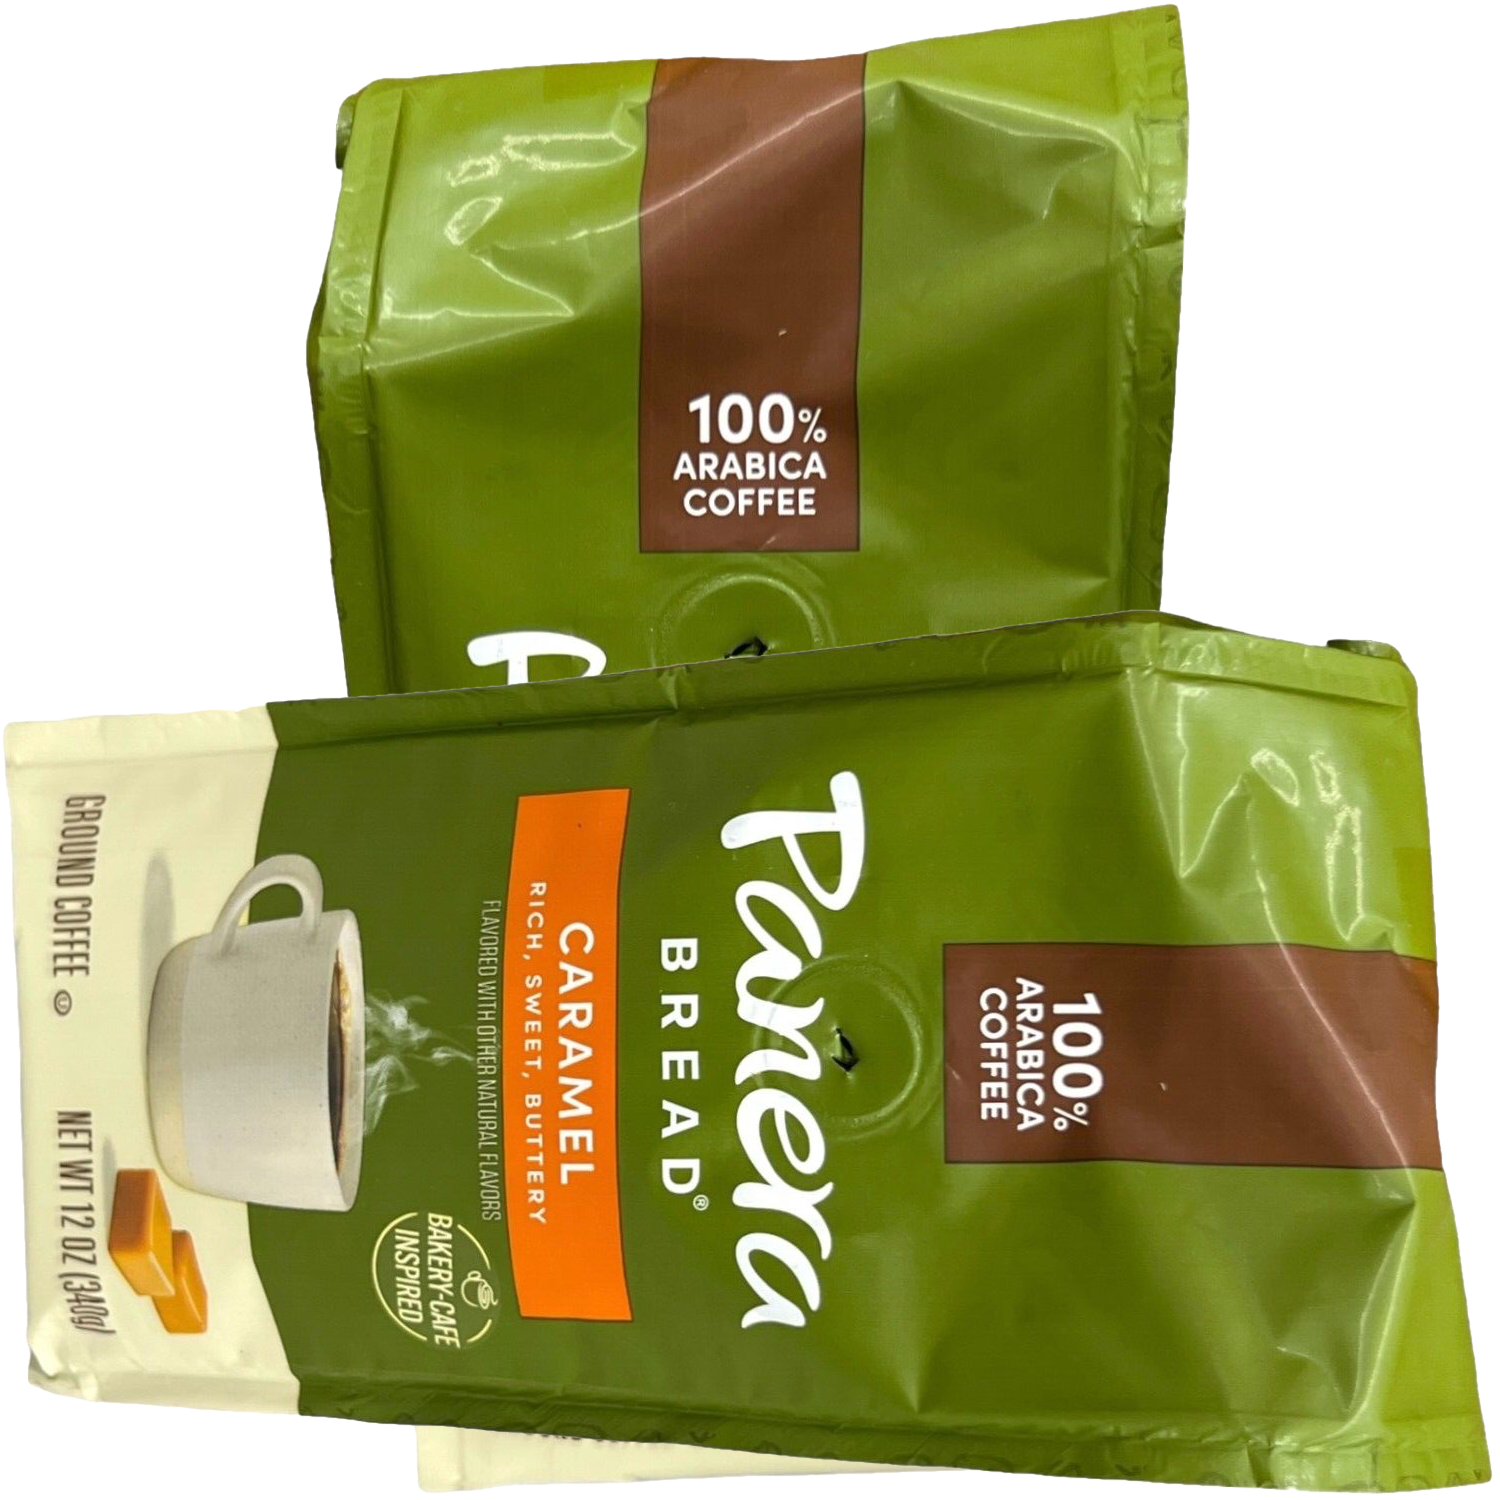 Free Panera Caramel Coffee At FreeOsk